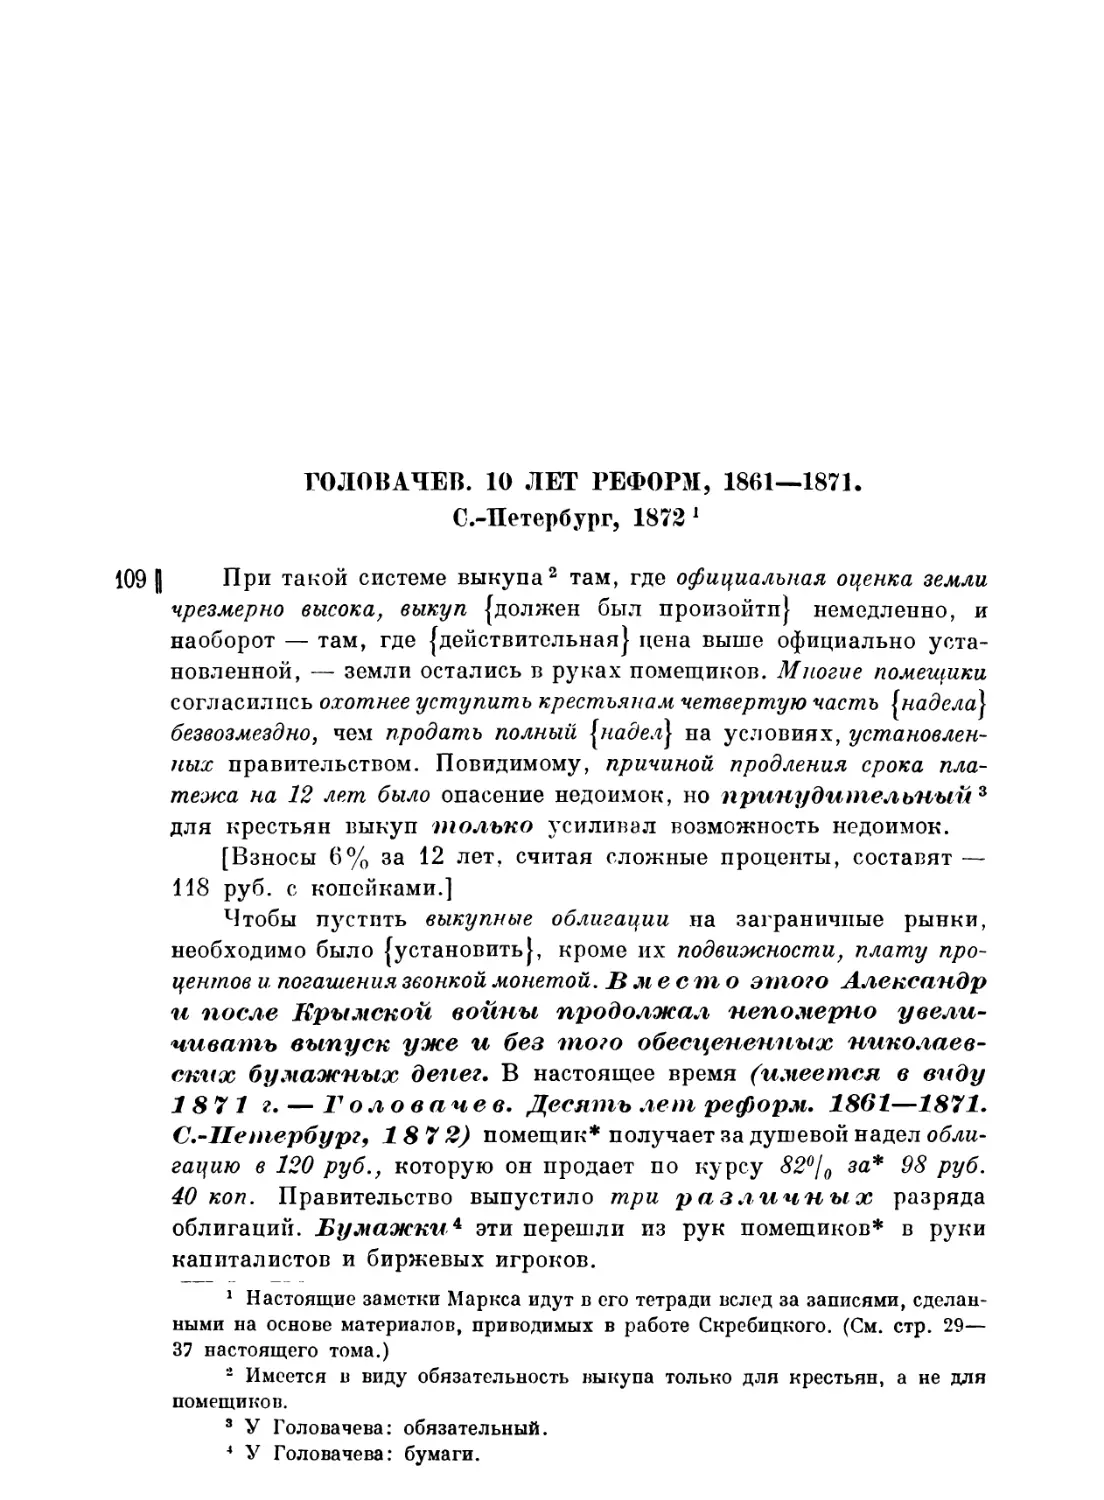 Выписки из книги Головачева «10 лет реформ, 1861—1871»